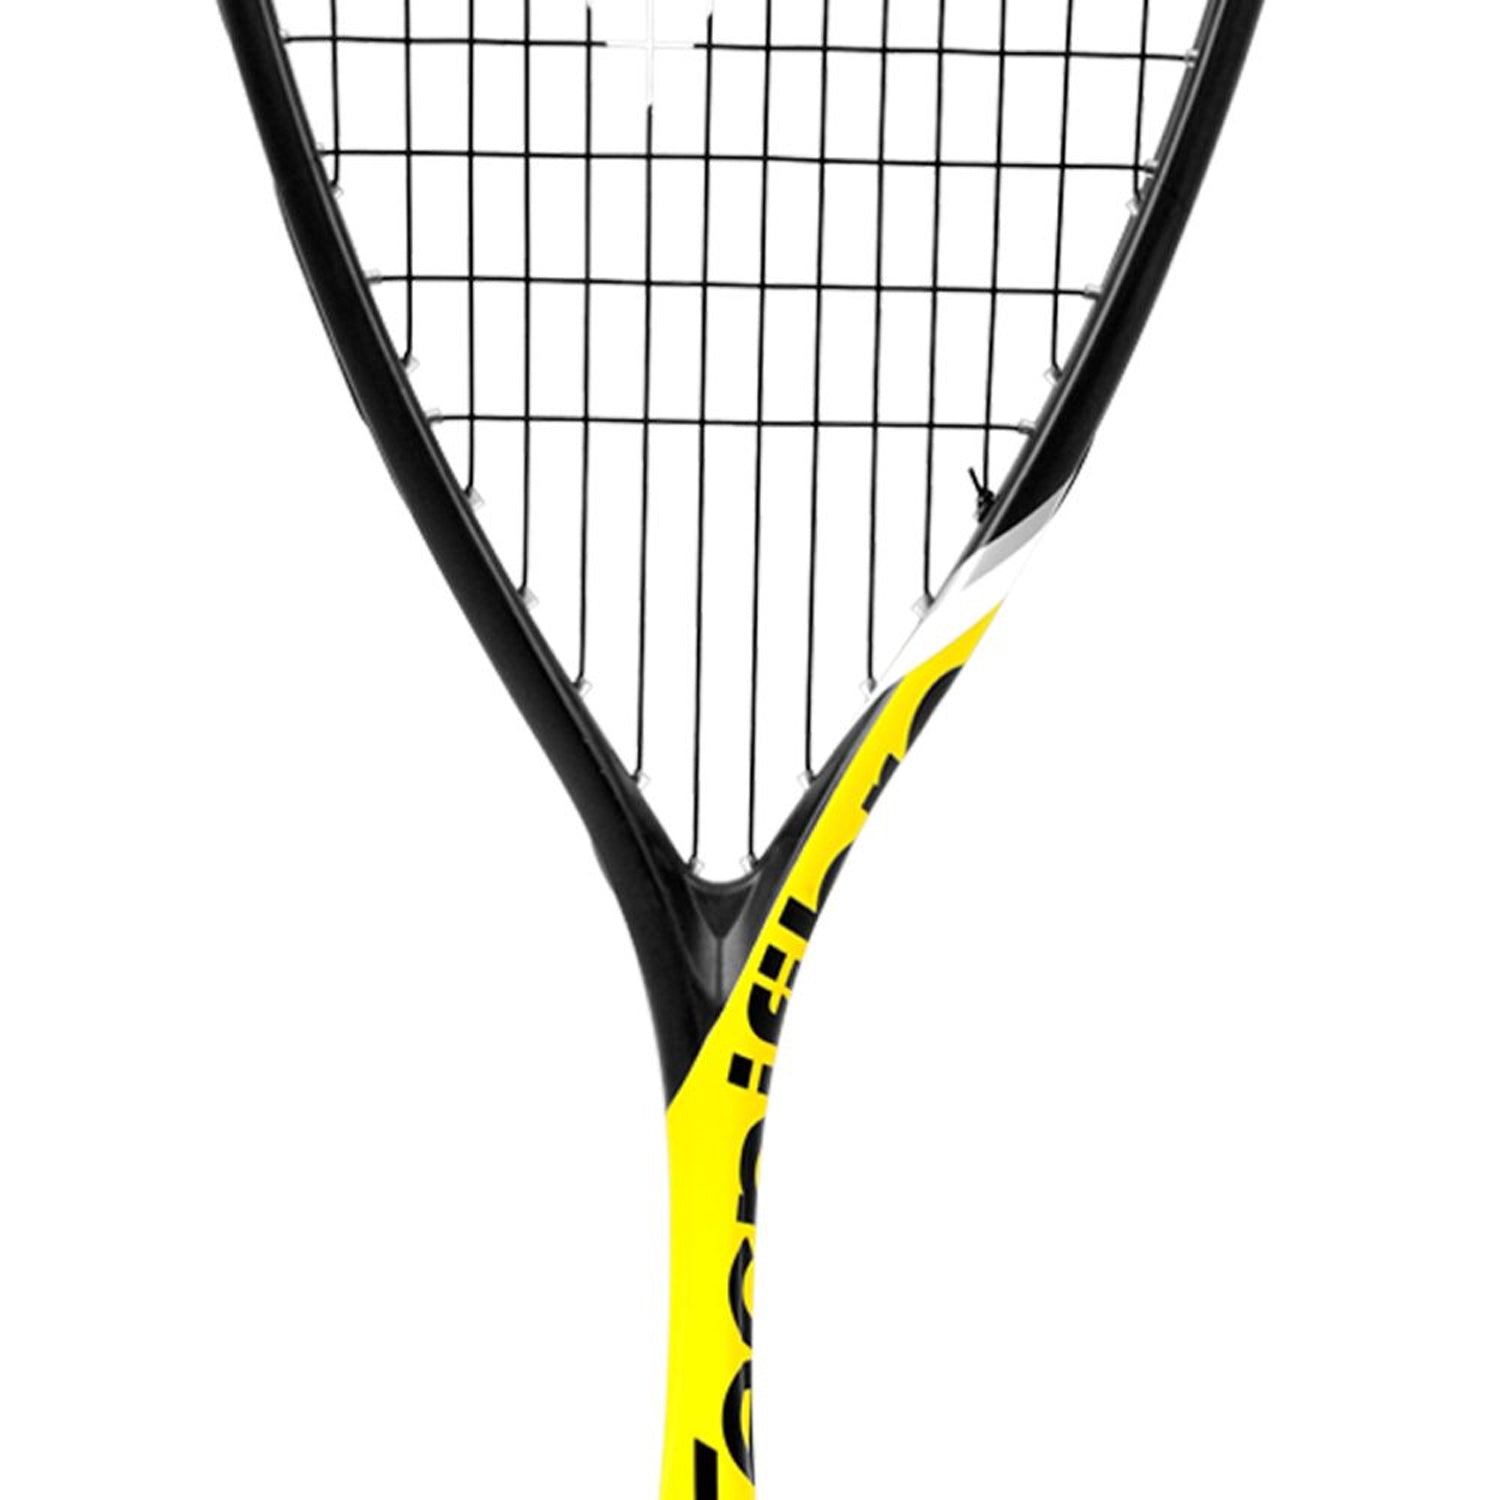 Tecnifibre Carboflex 125 Heritage 2 Squash Racquet - Best Price online Prokicksports.com